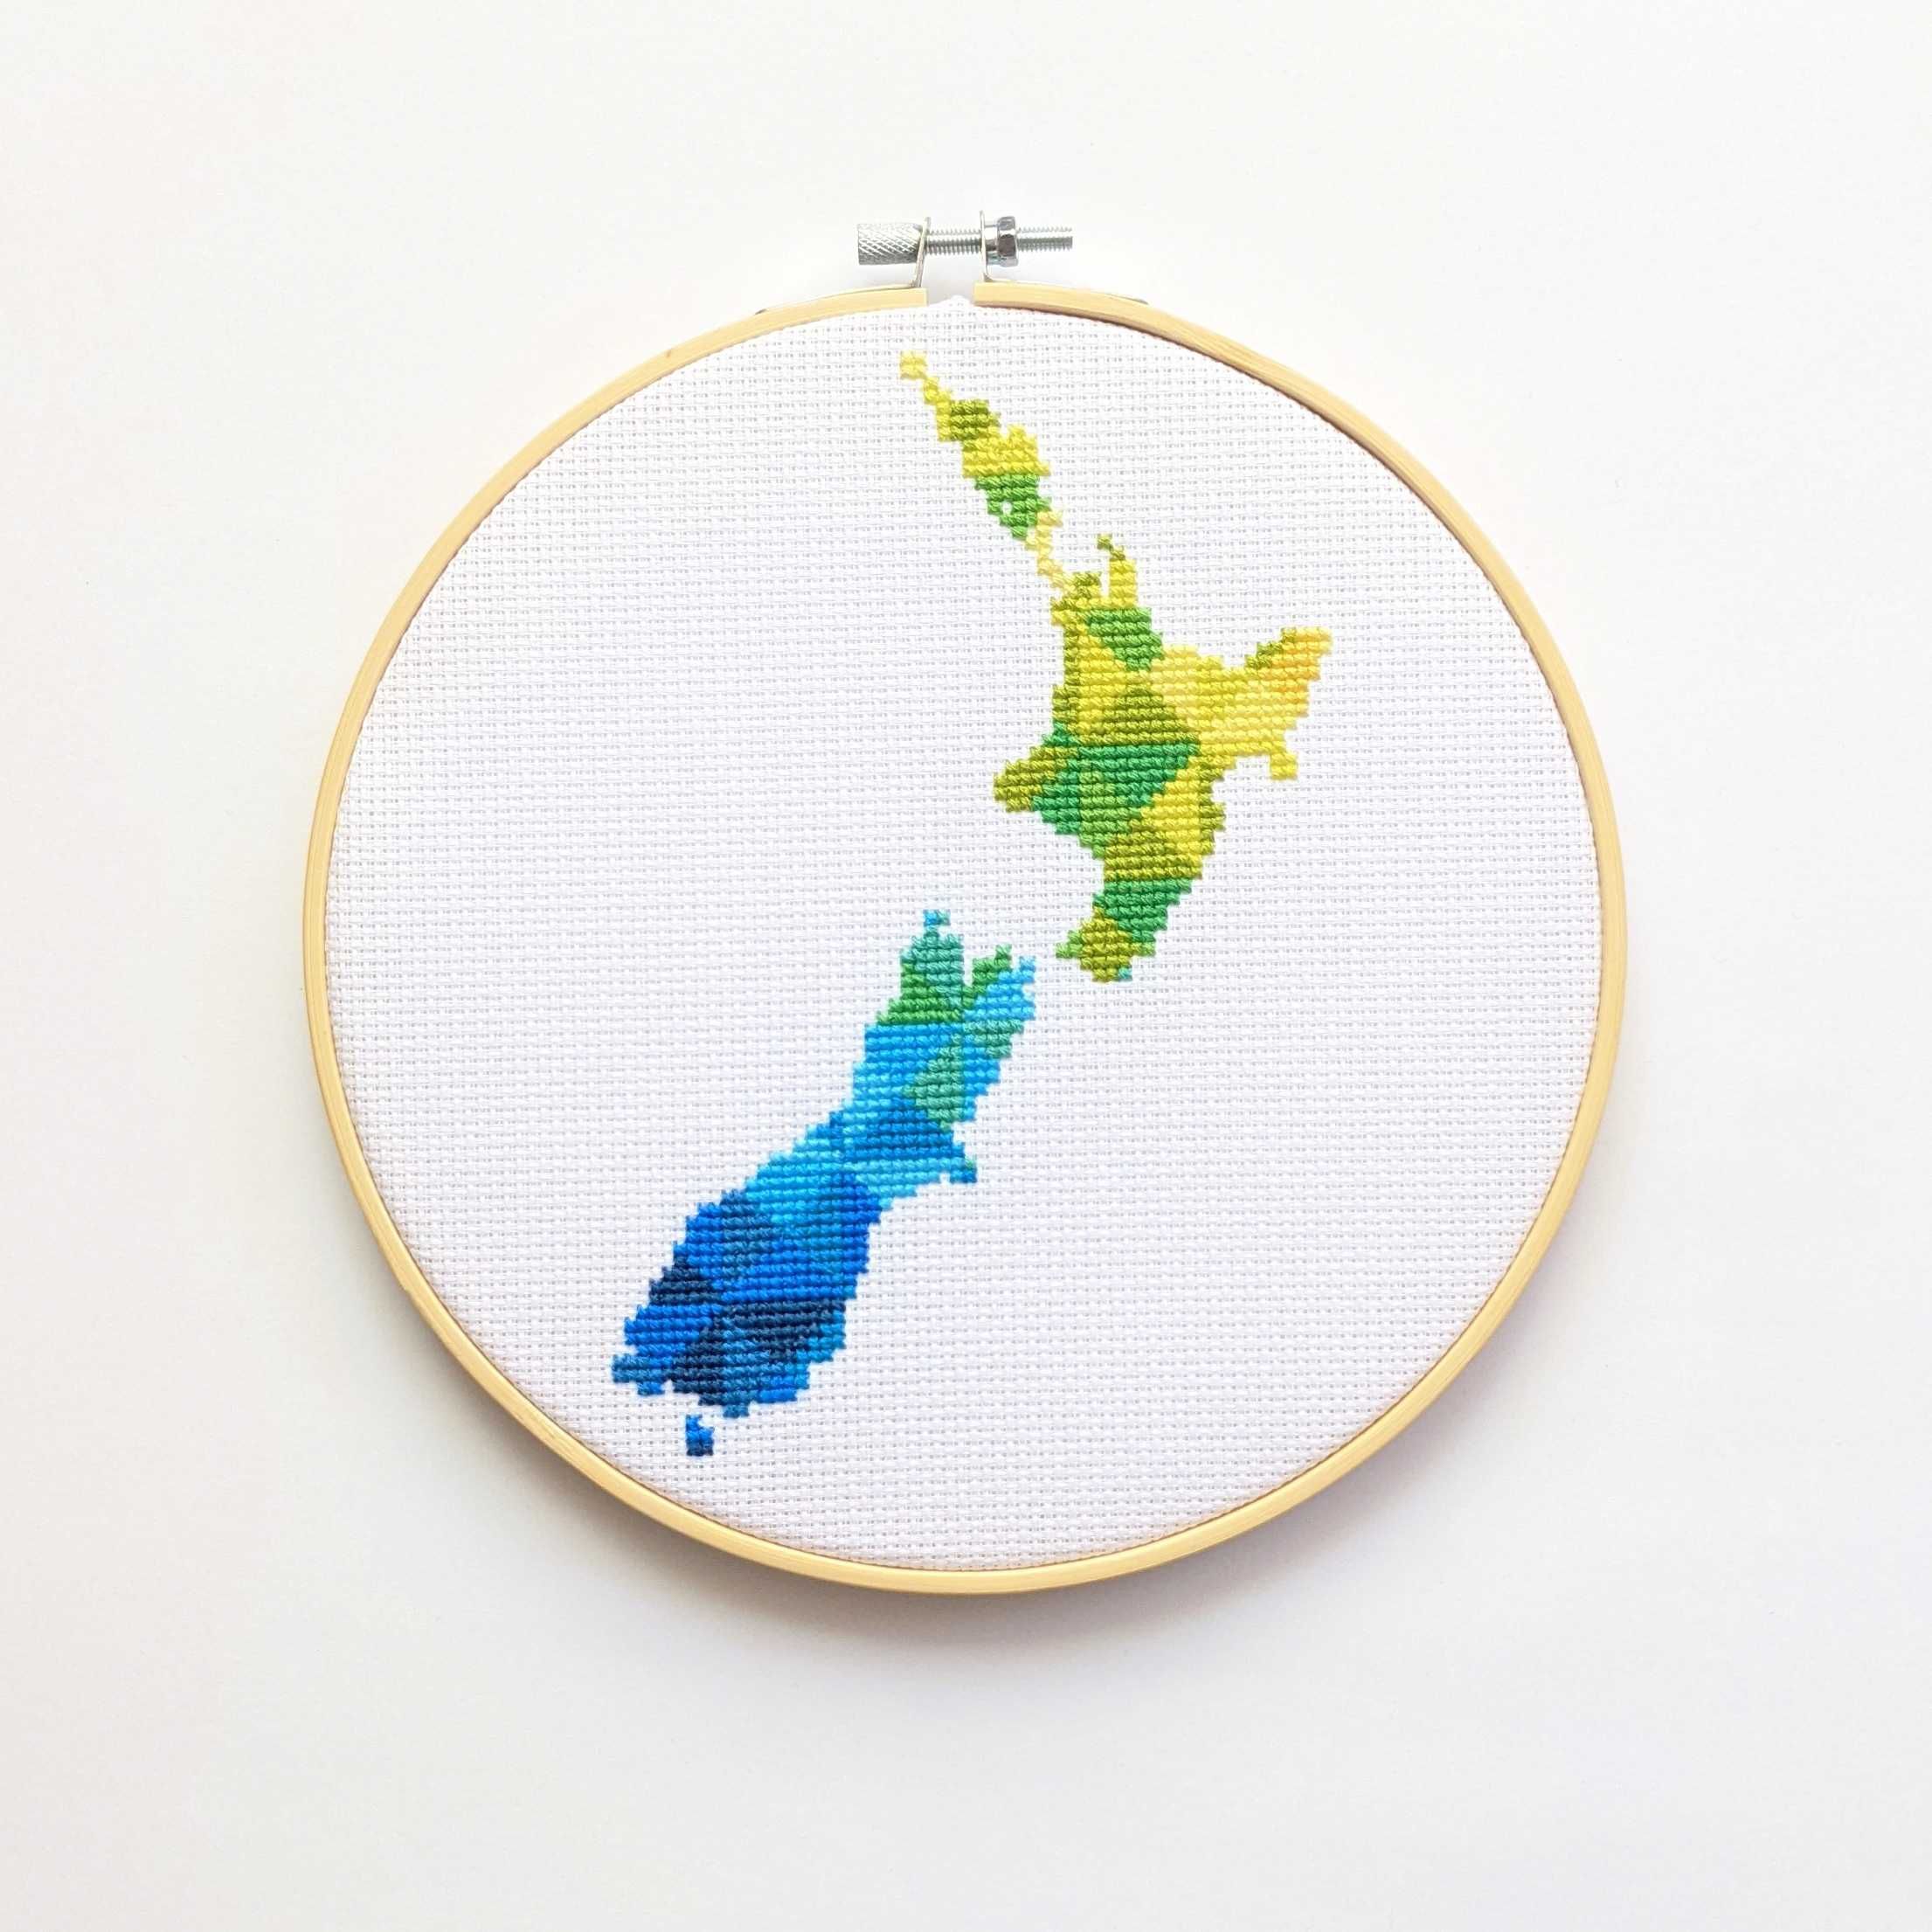 Nowa Zelandia mapa - wzór haftu krzyżykowego